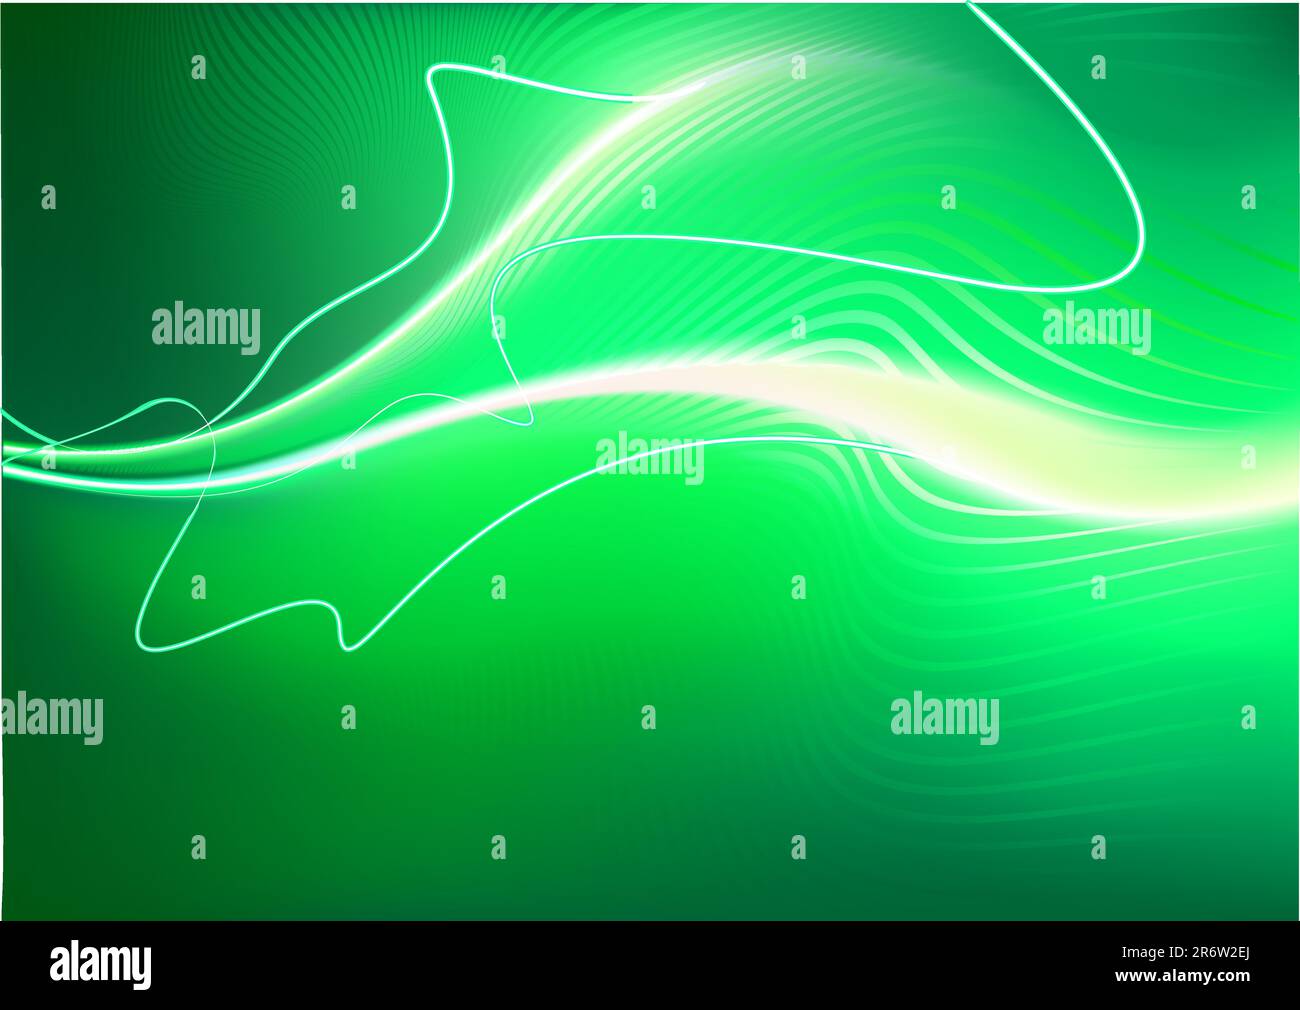 Un vecteur illustré futuristic background vert ressemblant à une méduse-comme créature à la vitesse maximale sur le dessus de motion-incendie floue Illustration de Vecteur